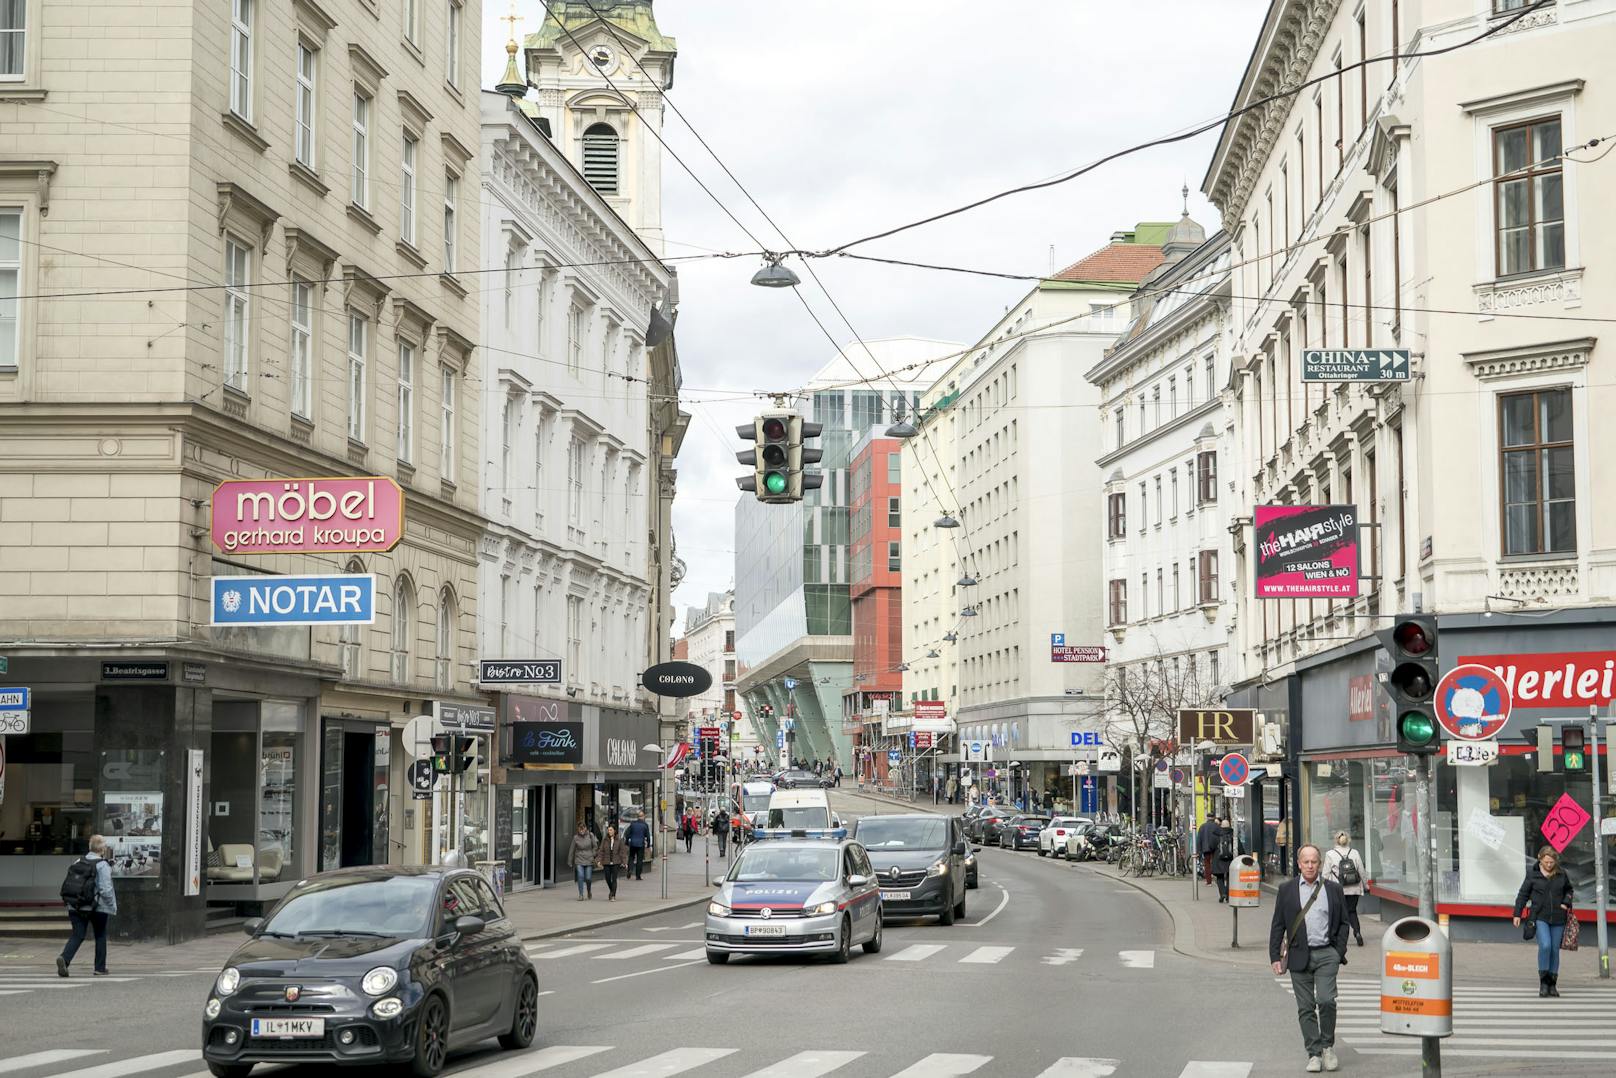 Tempo 30 auf der Landstraßer Hauptstraße war geplant, wurde aber verworfen. Die Grünen wünschen sich eine Begegnungszone.